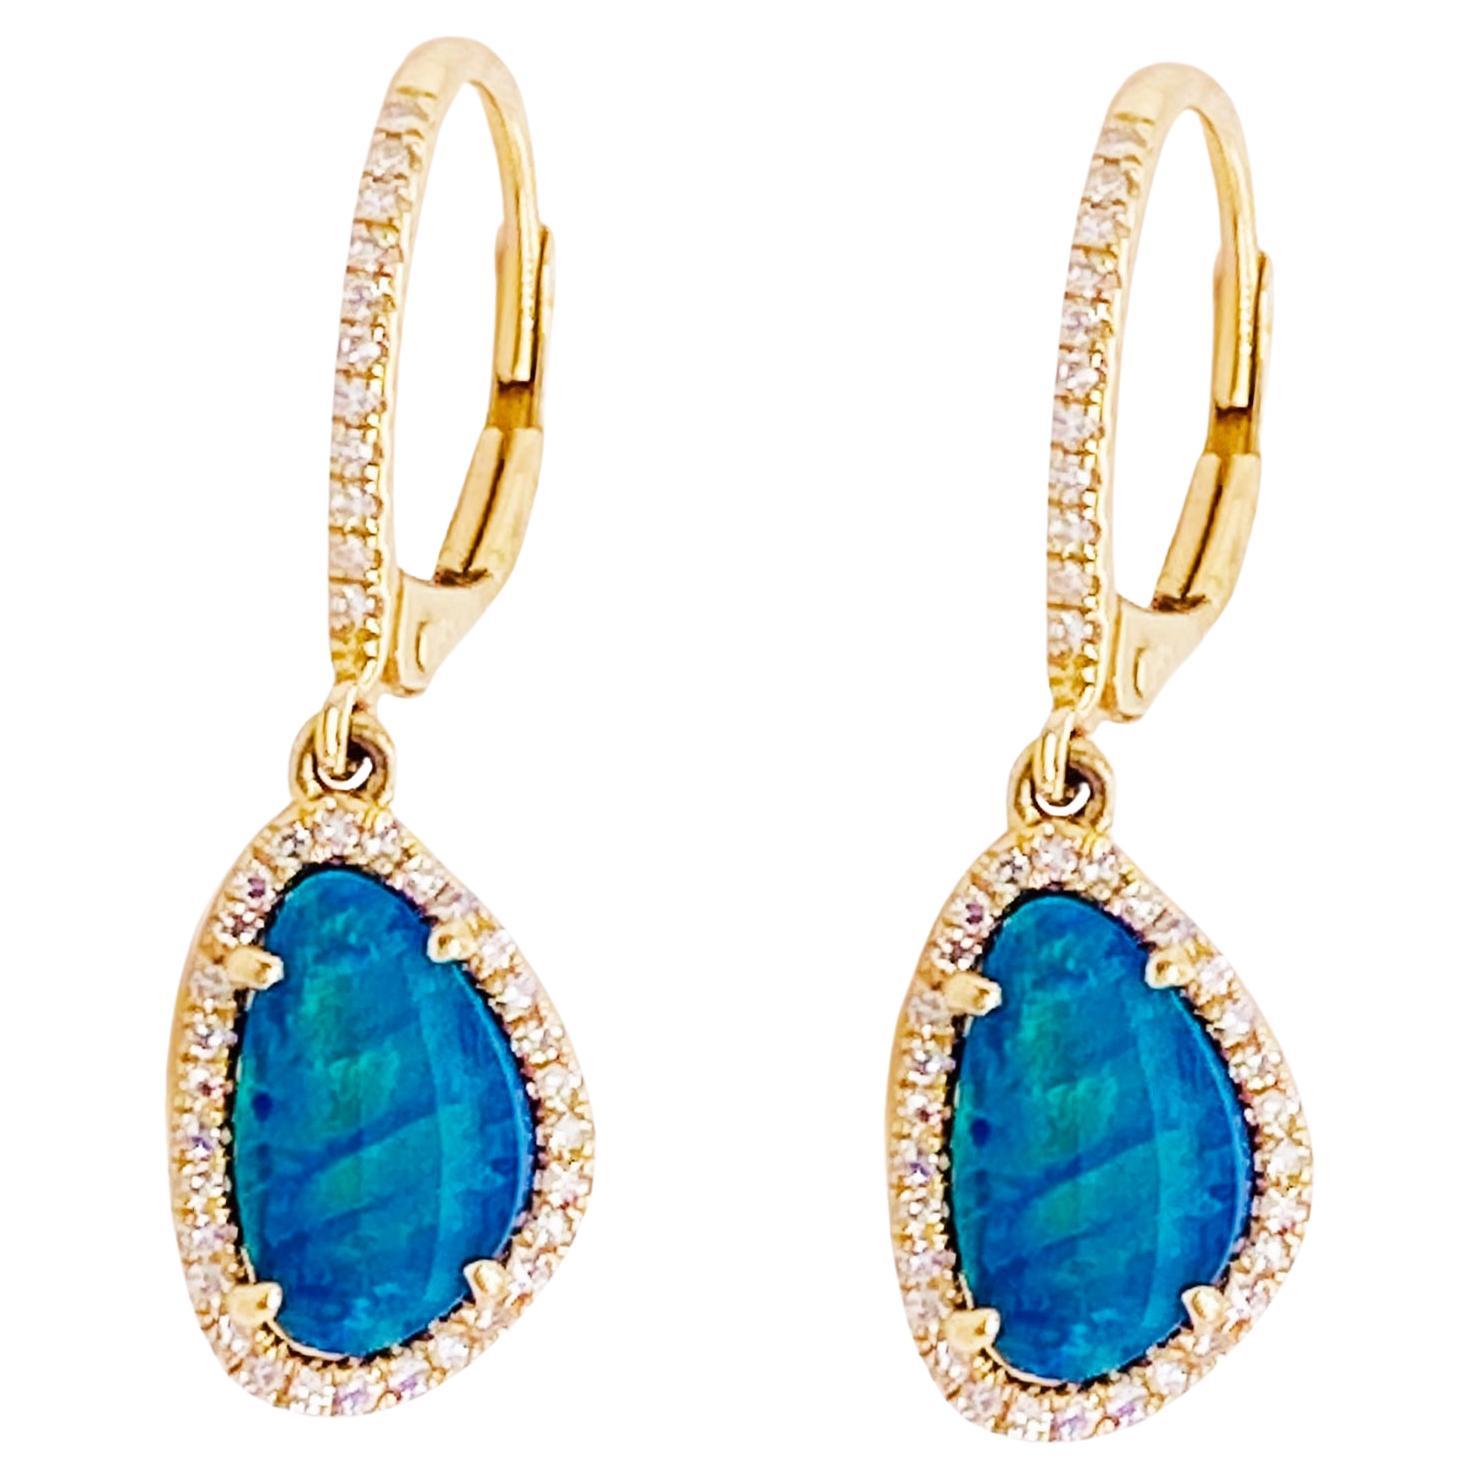 Ocean Blue Opal Diamond Halo Earrings 14K Yellow Gold Opal Earring Dangles For Sale